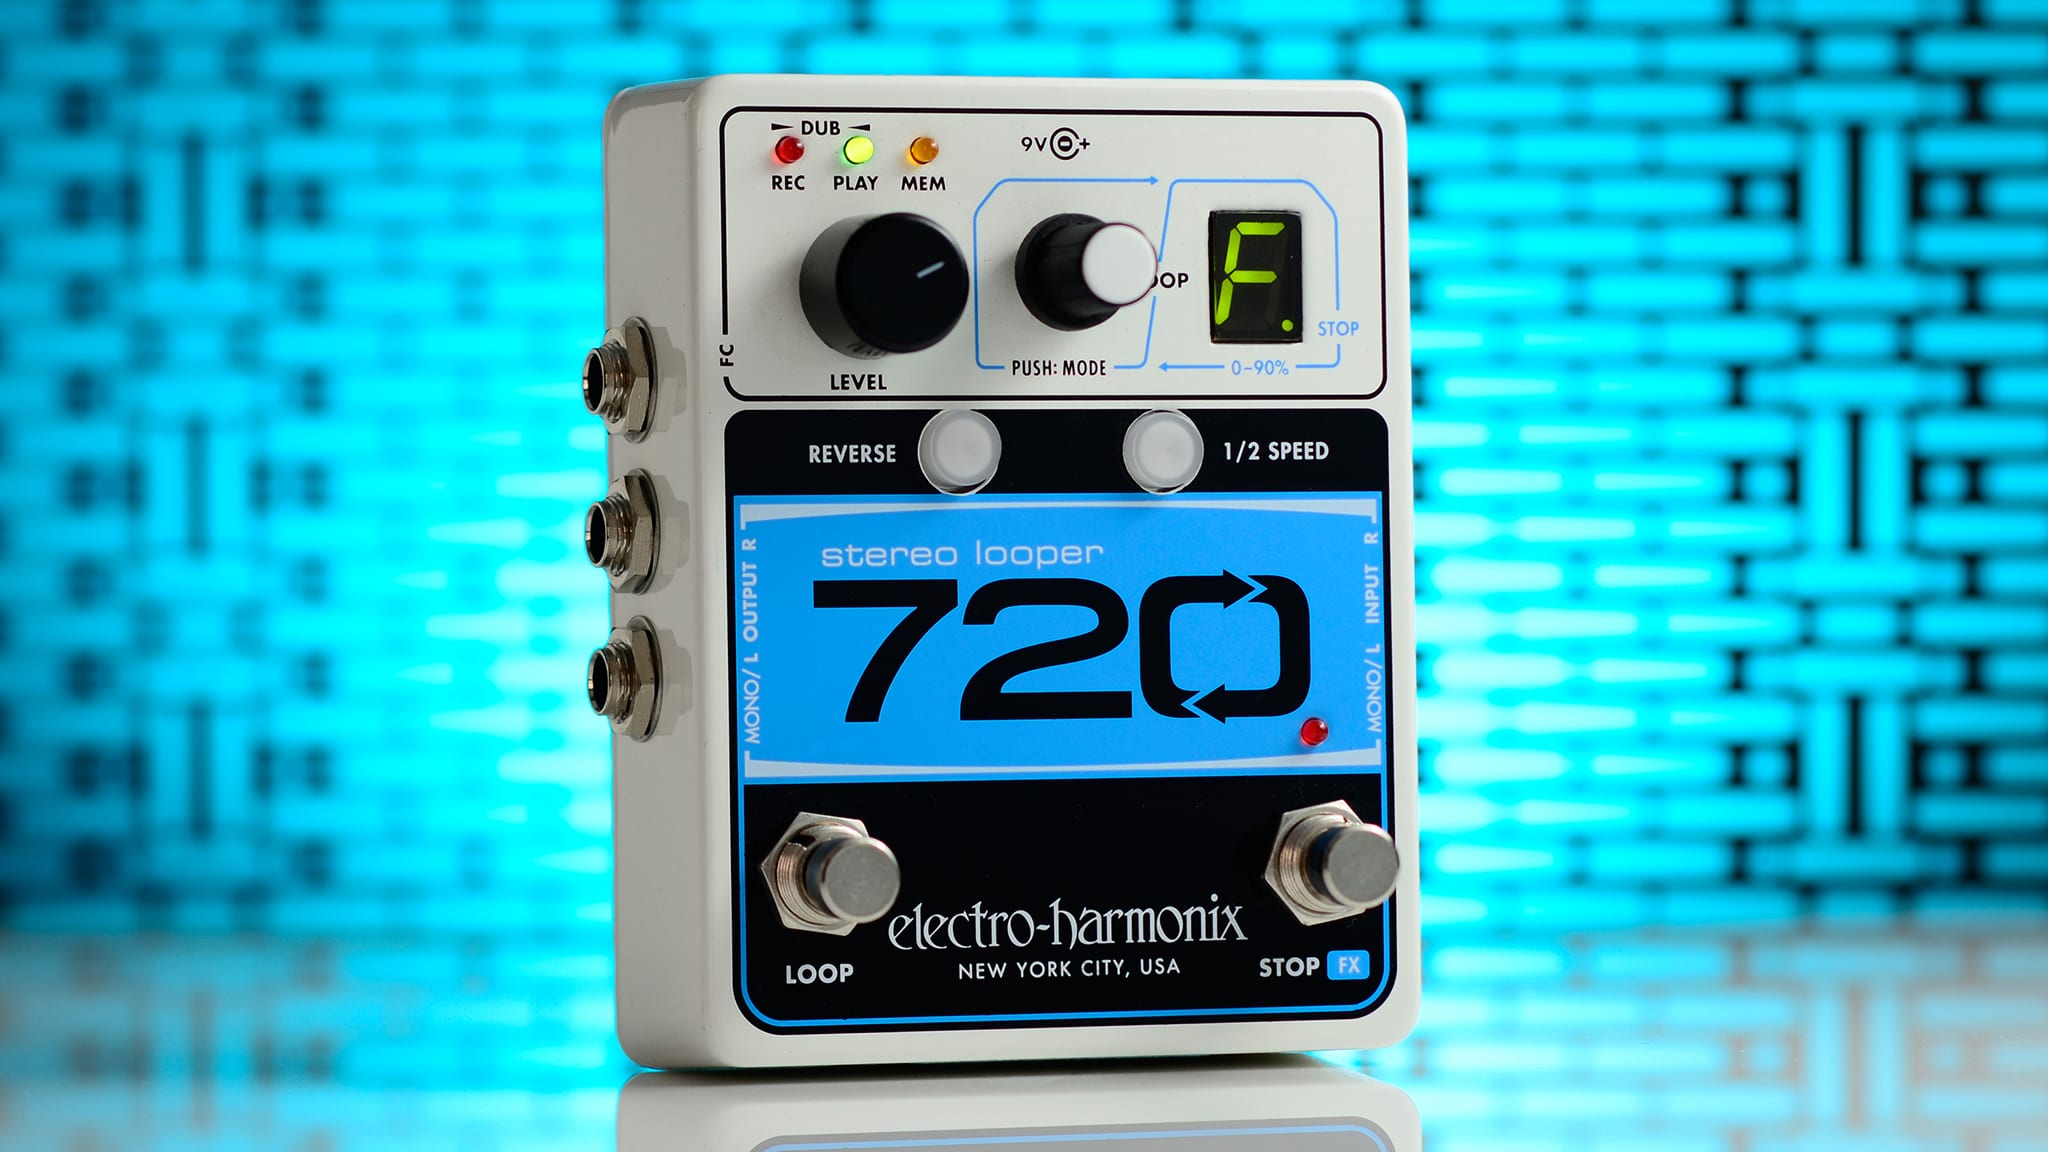 Electro-Harmonix 720 Stereo Looper Released